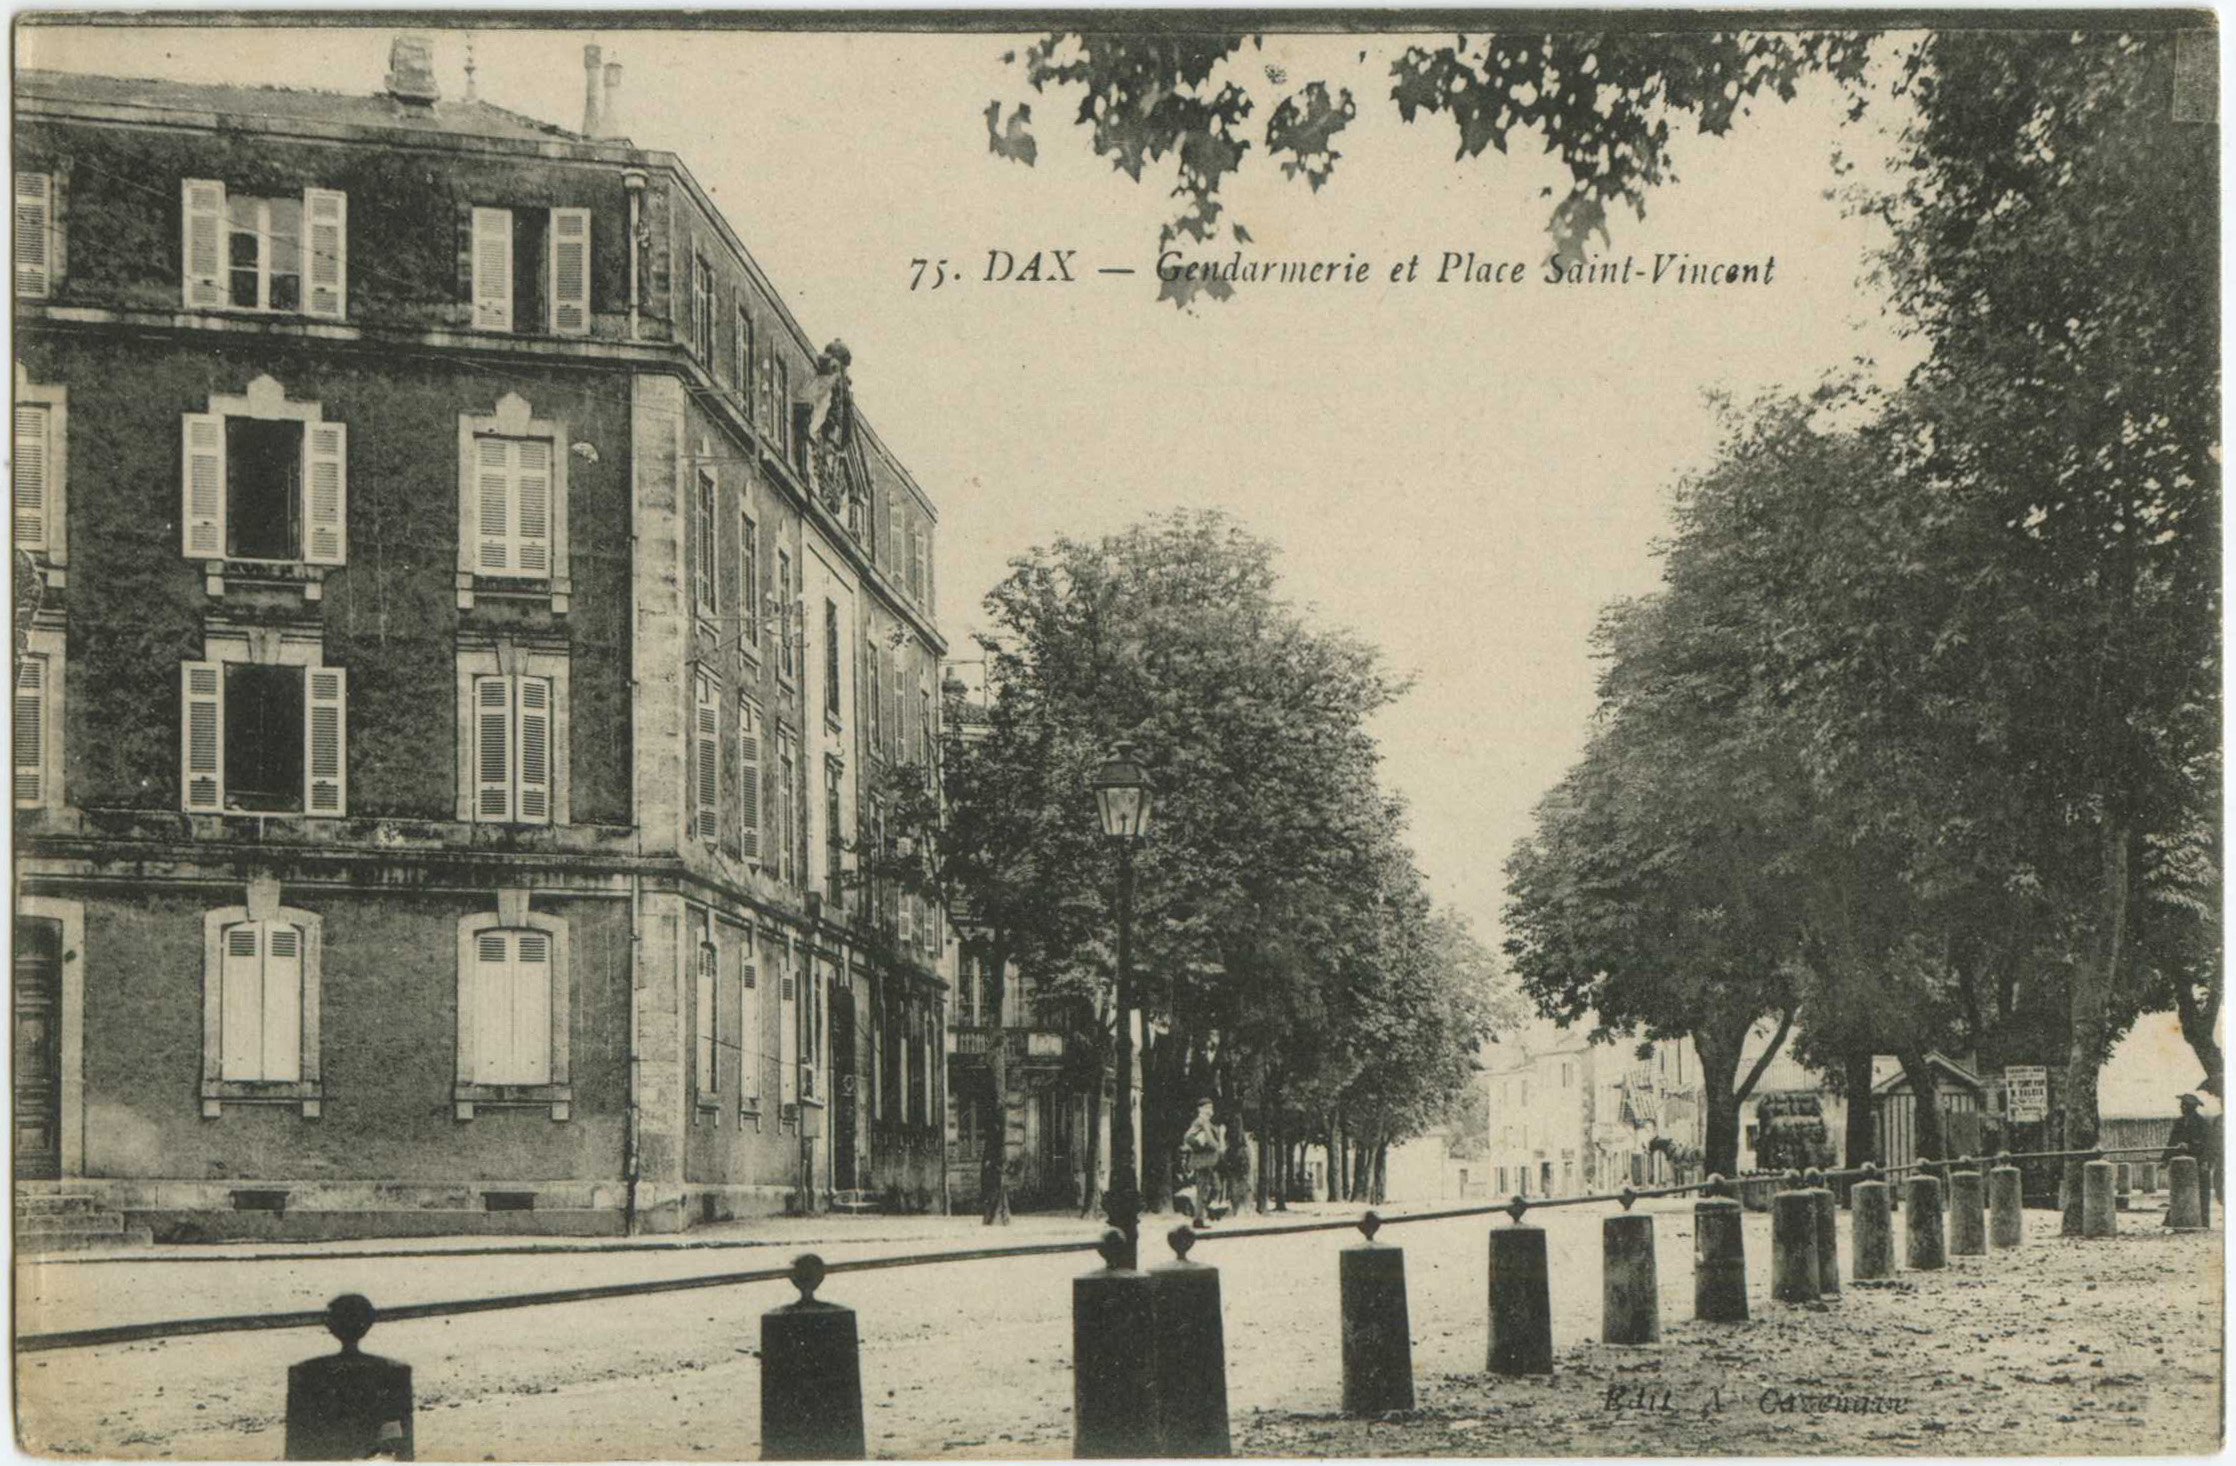 Dax - Gendarmerie et Place Saint-Vincent